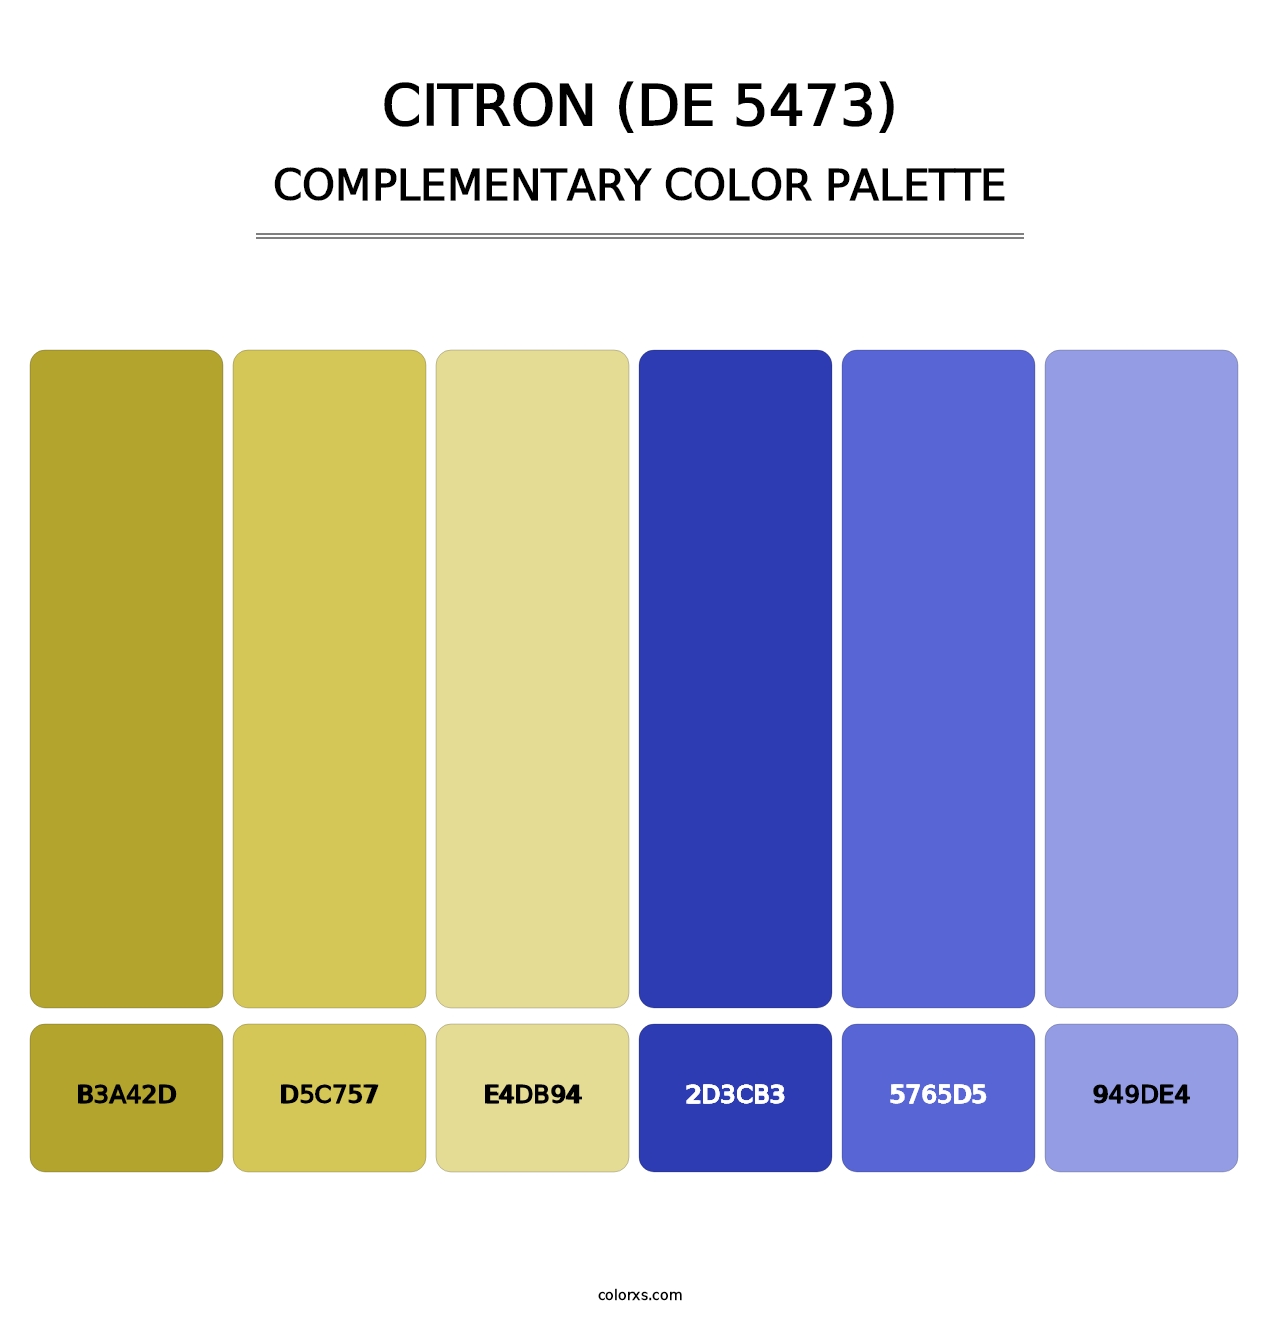 Citron (DE 5473) - Complementary Color Palette